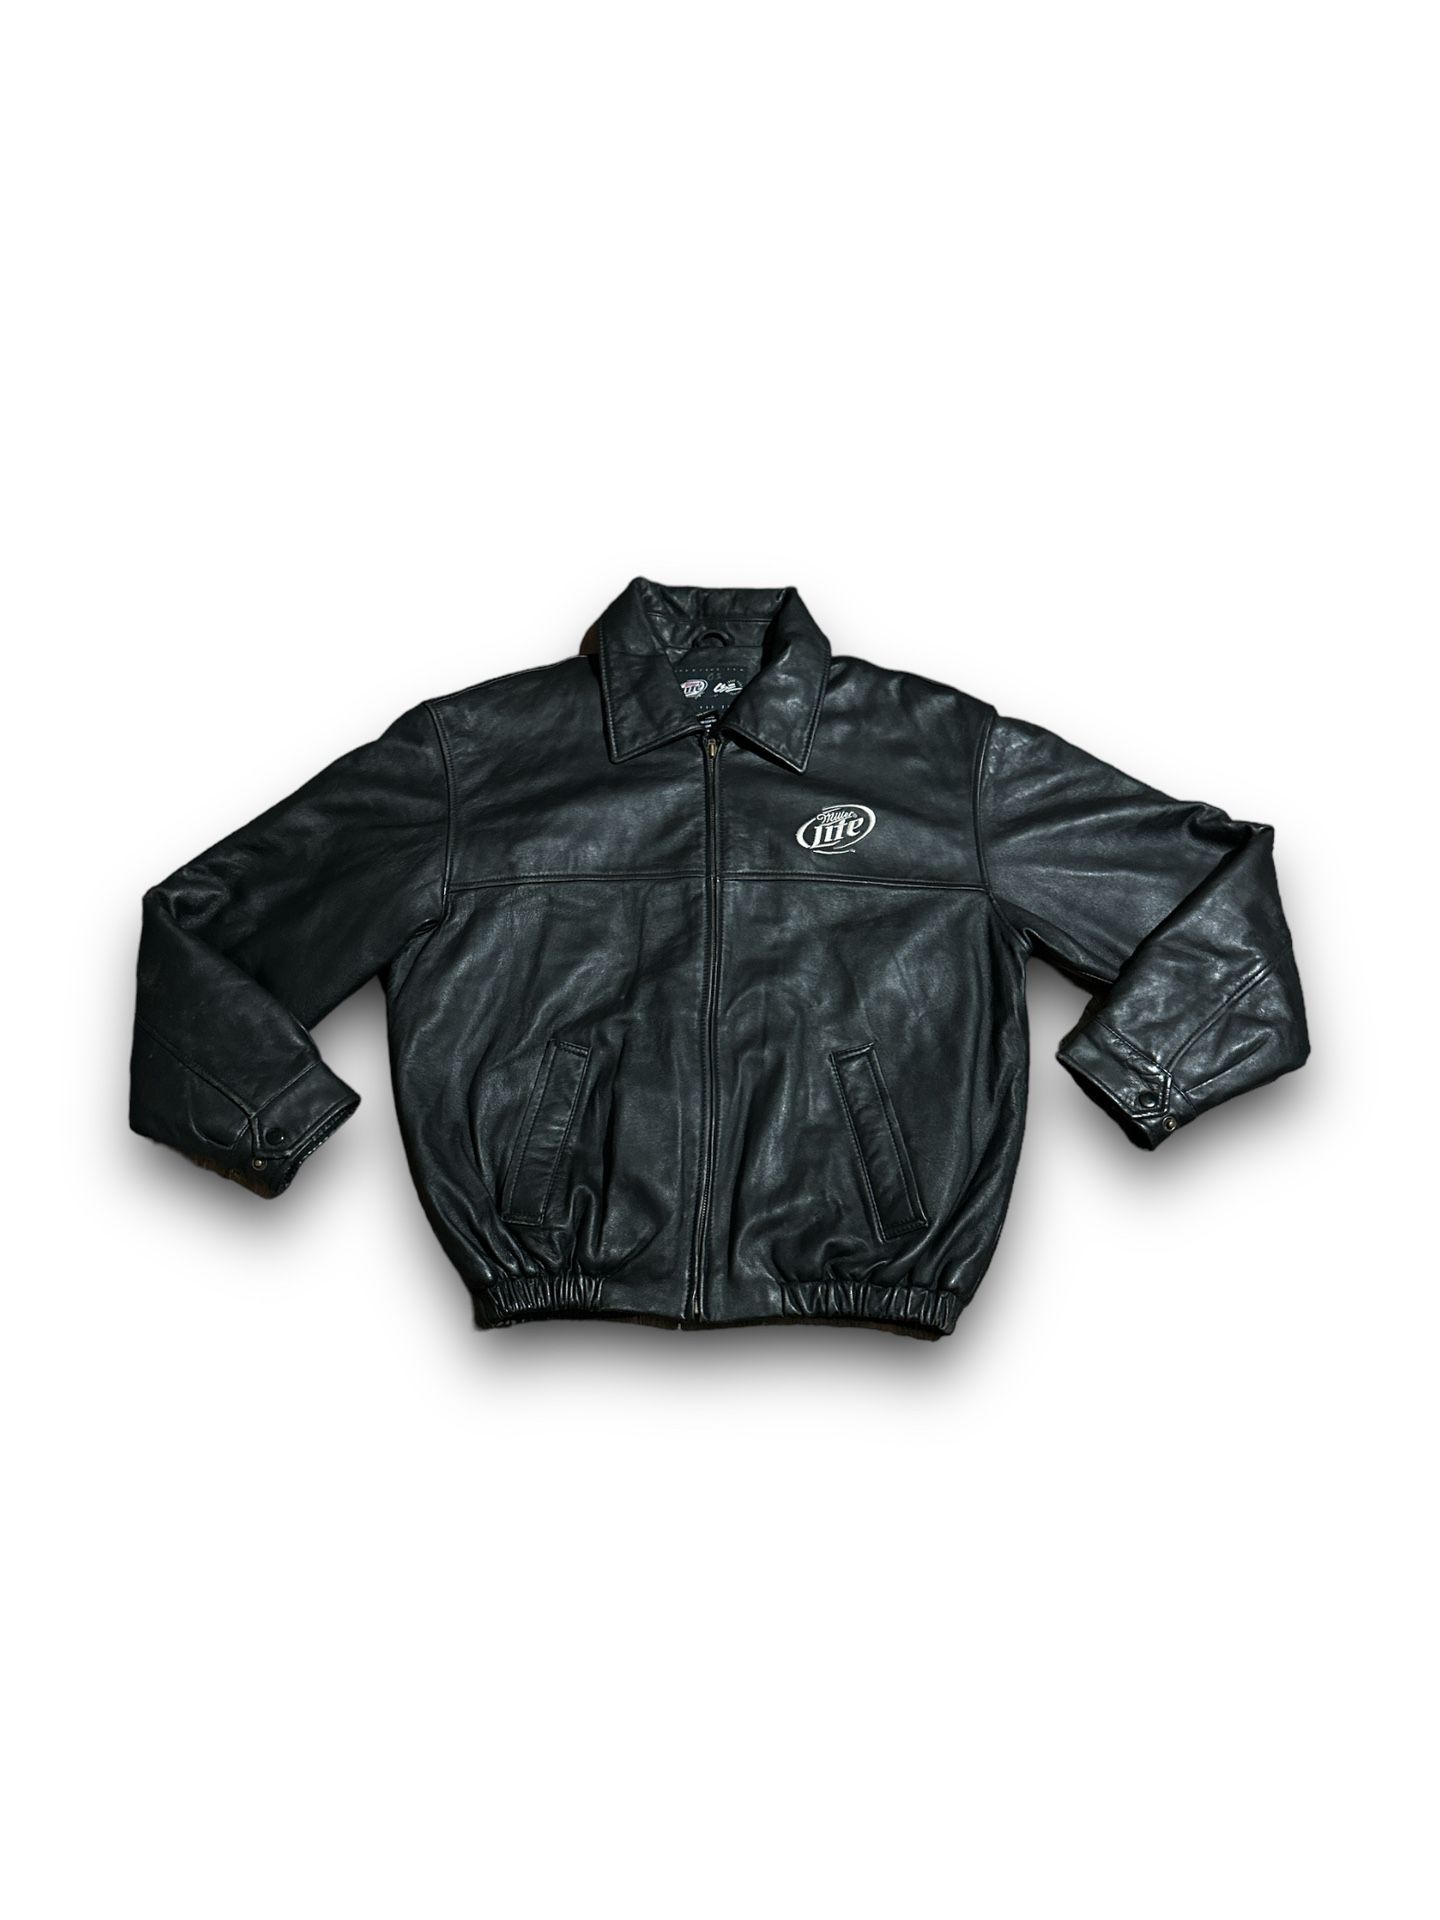 Vintage Harley Davidson Miller Lite leather jacket 